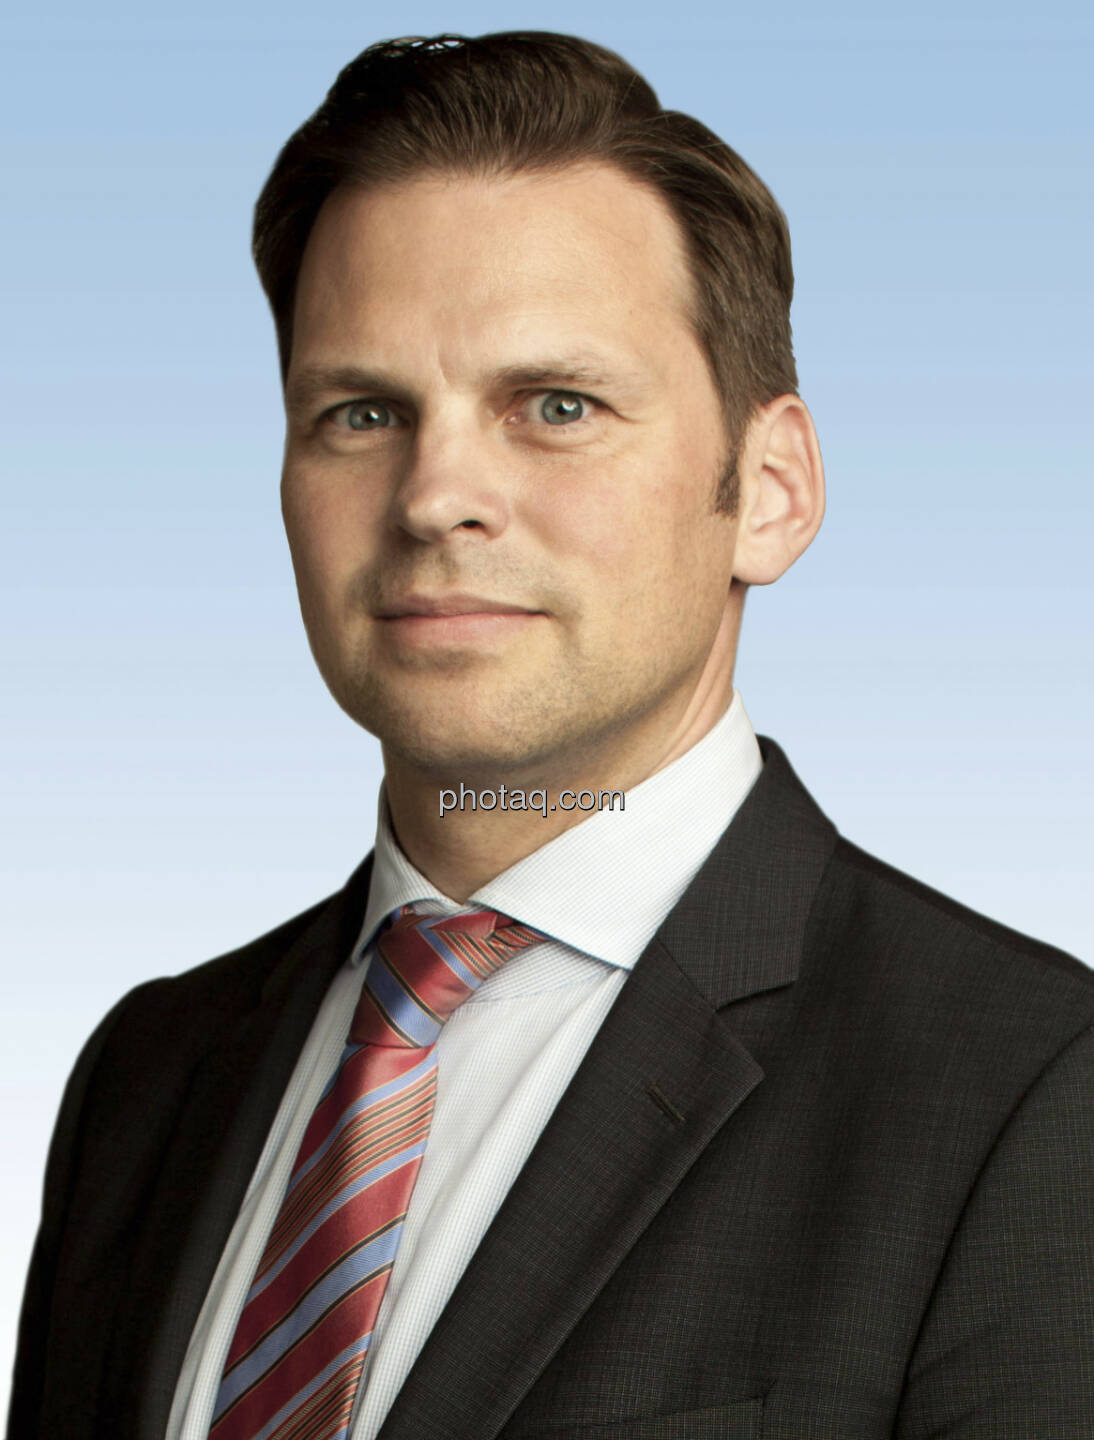 AUA: Bernd Hartweger (41) übernimmt als Vice President die Produkt- und Marketing-Leitung in der Austrian Airlines Group. Hartweger folgt Peter Baumgartner, der das Unternehmen 2012 verlassen hat. Hartweger, der derzeit noch CEO der paybox Bank innerhalb der Telekom Austria Group ist, wird seine Funktion zum 21.Mai 2013 aufnehmen (c) Aussendung